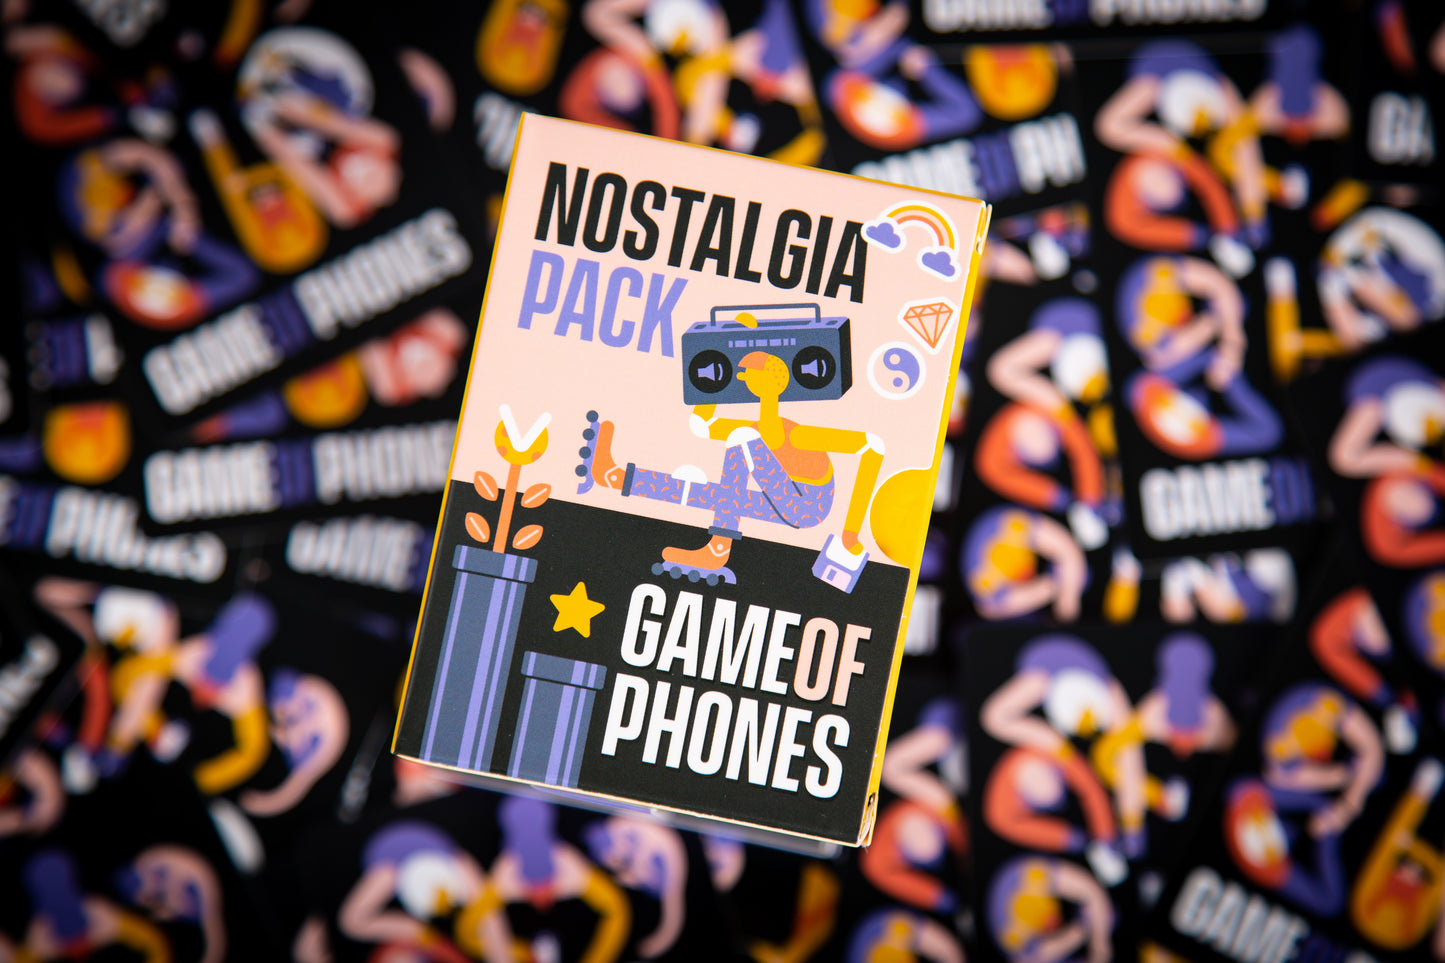 Game of Phones: The Nostalgia Mini Pack